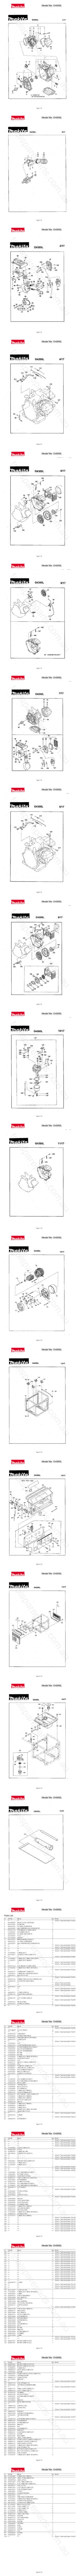 Makita G4300L  Diagram 0